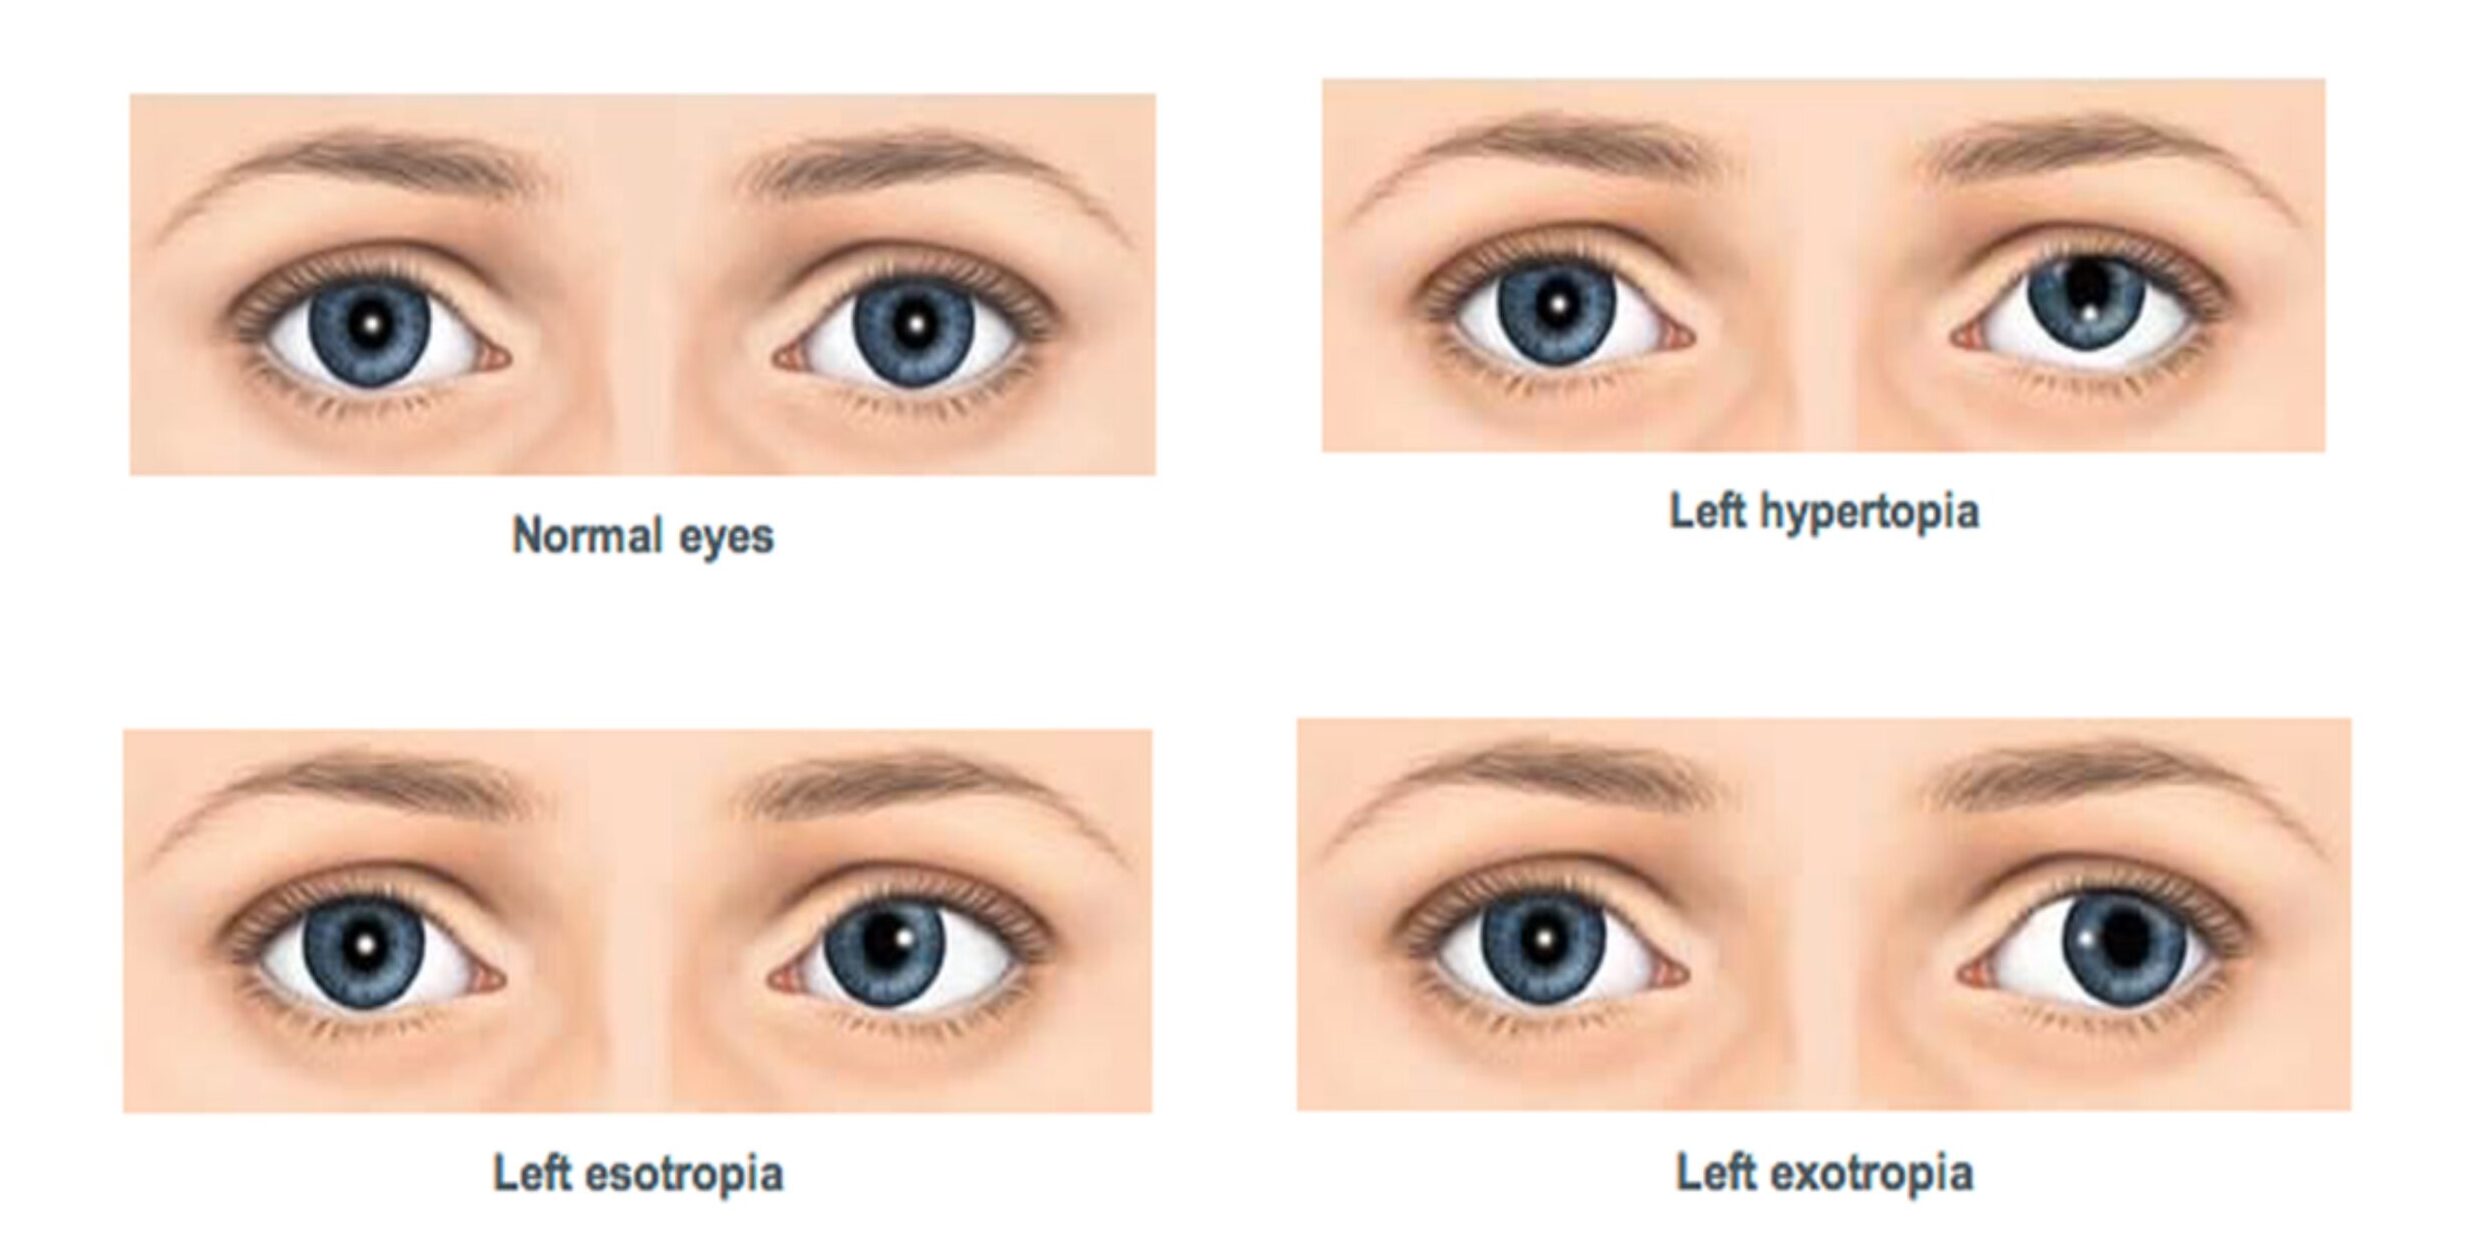 علاج حول العين